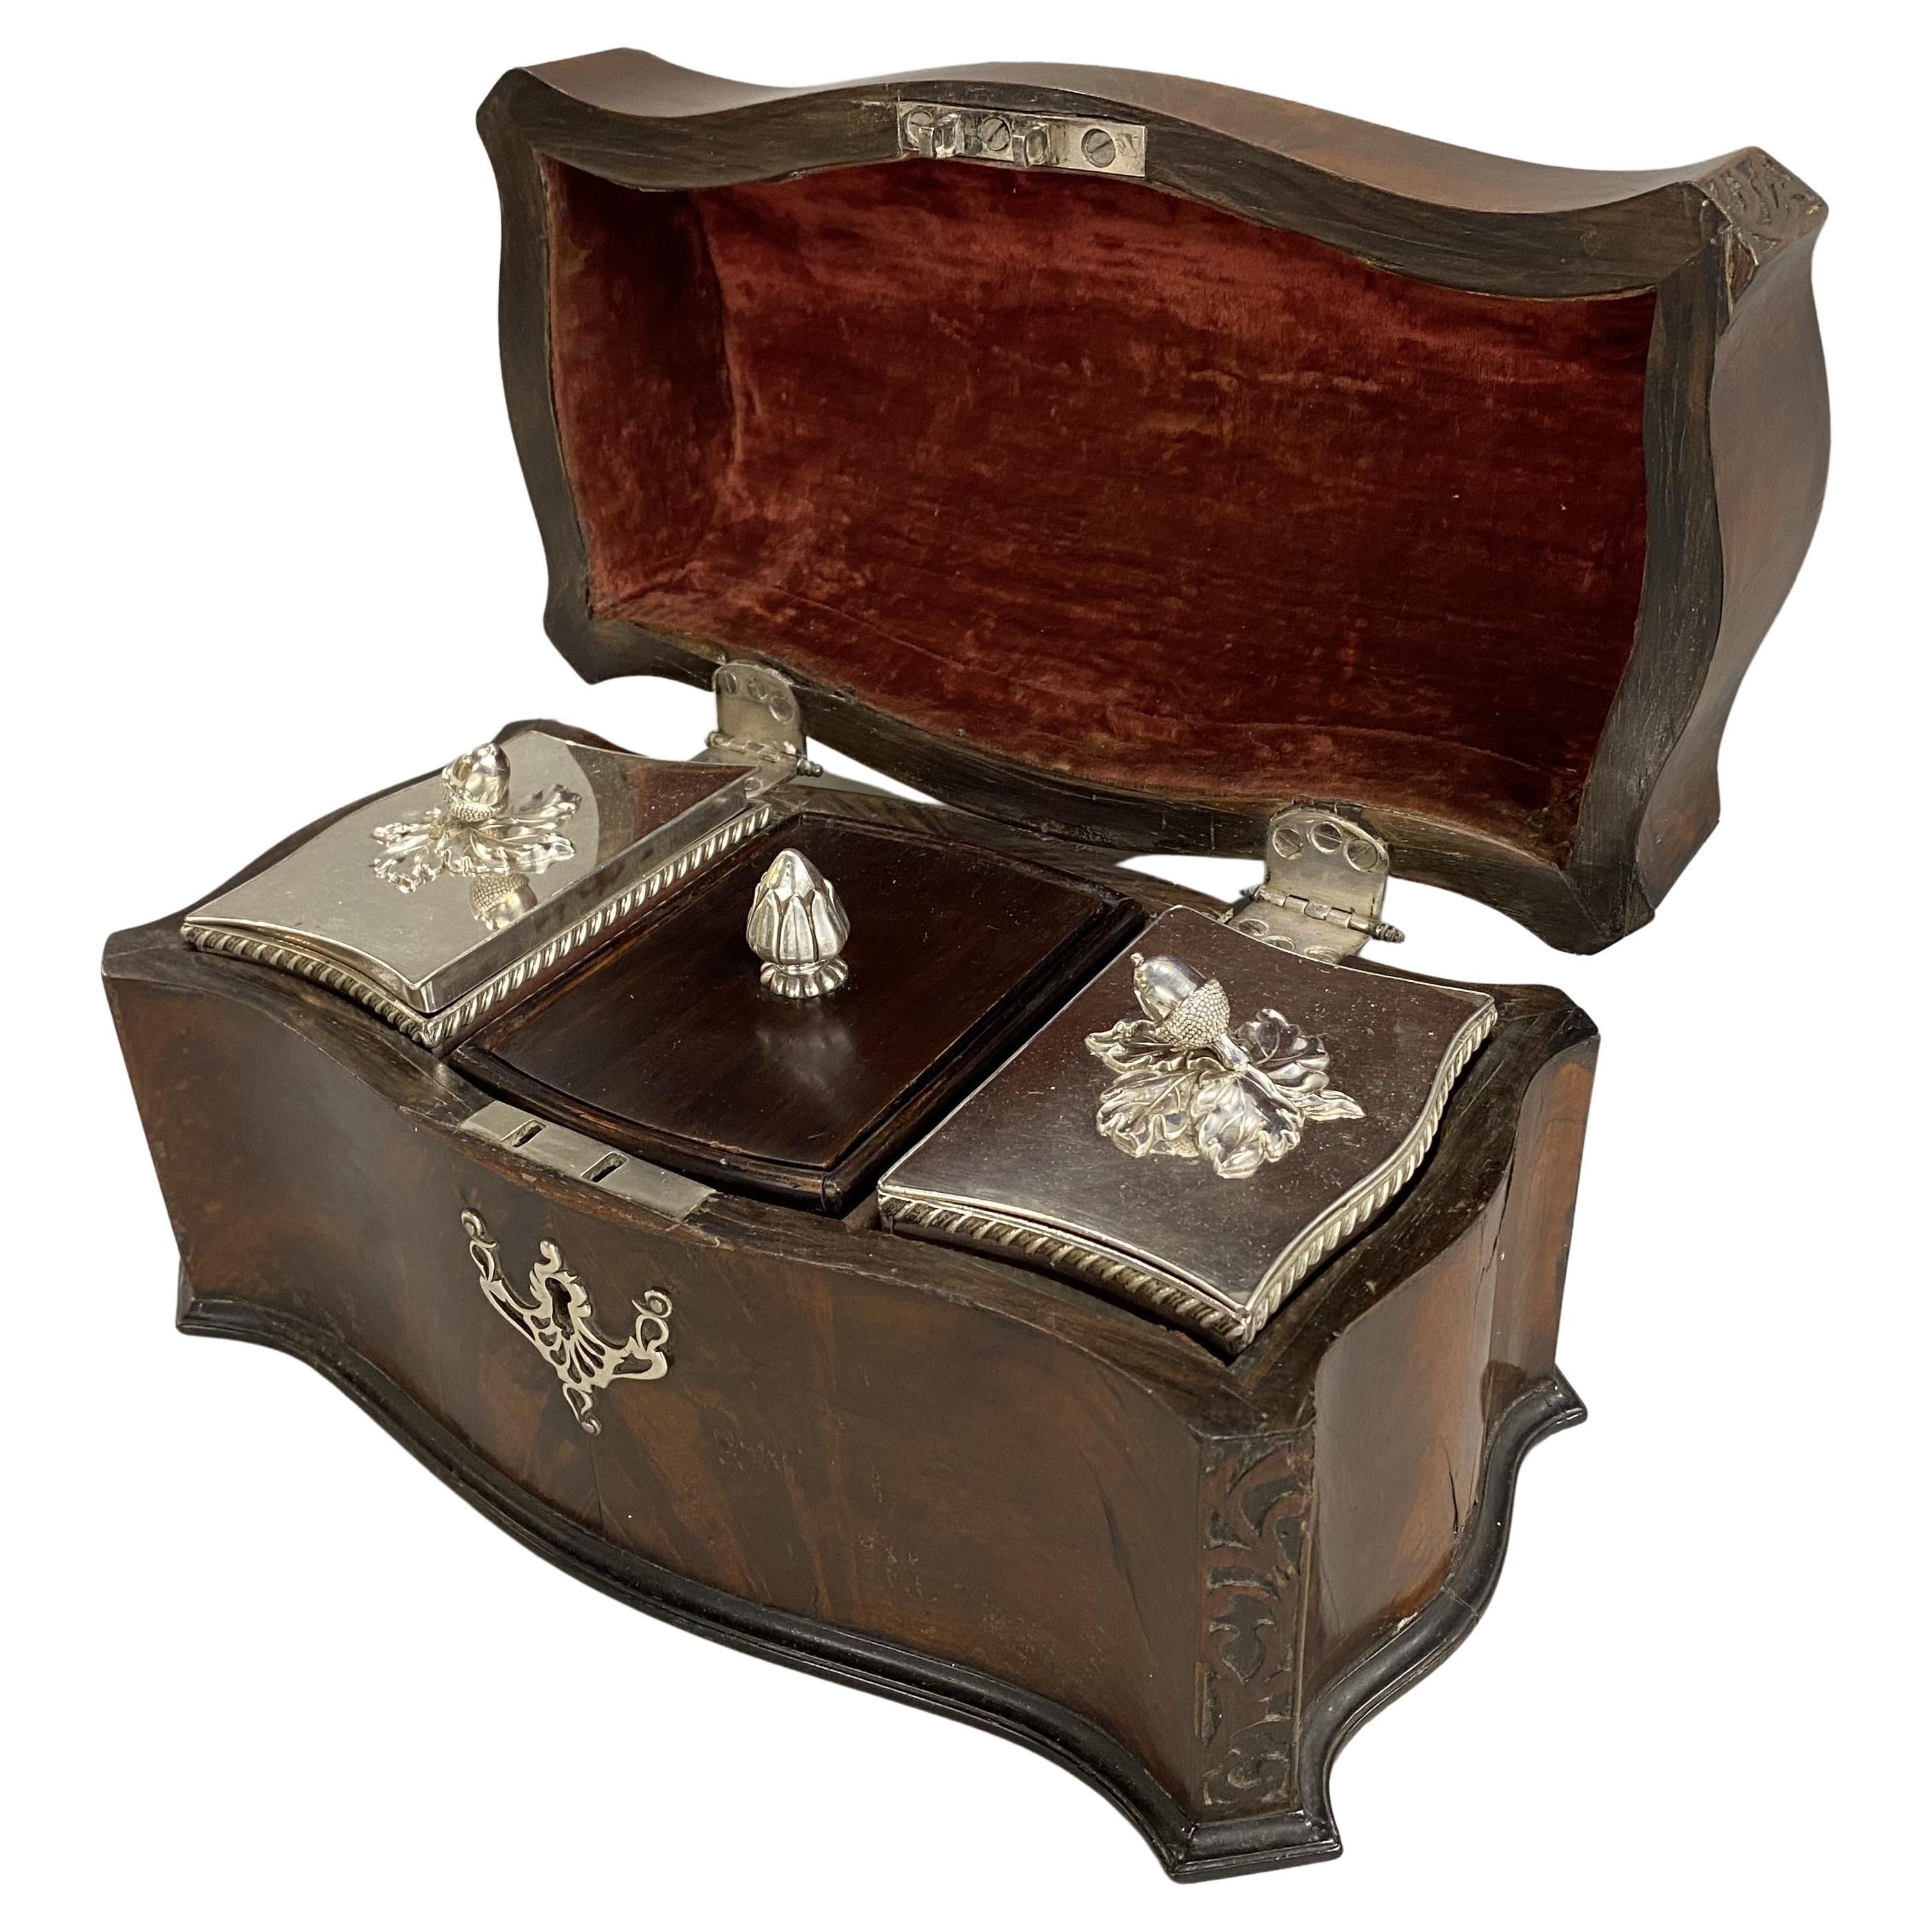 Caddy à thé anglais de style Chippendale du 19e siècle en acajou avec boîtes à thé en métal argenté